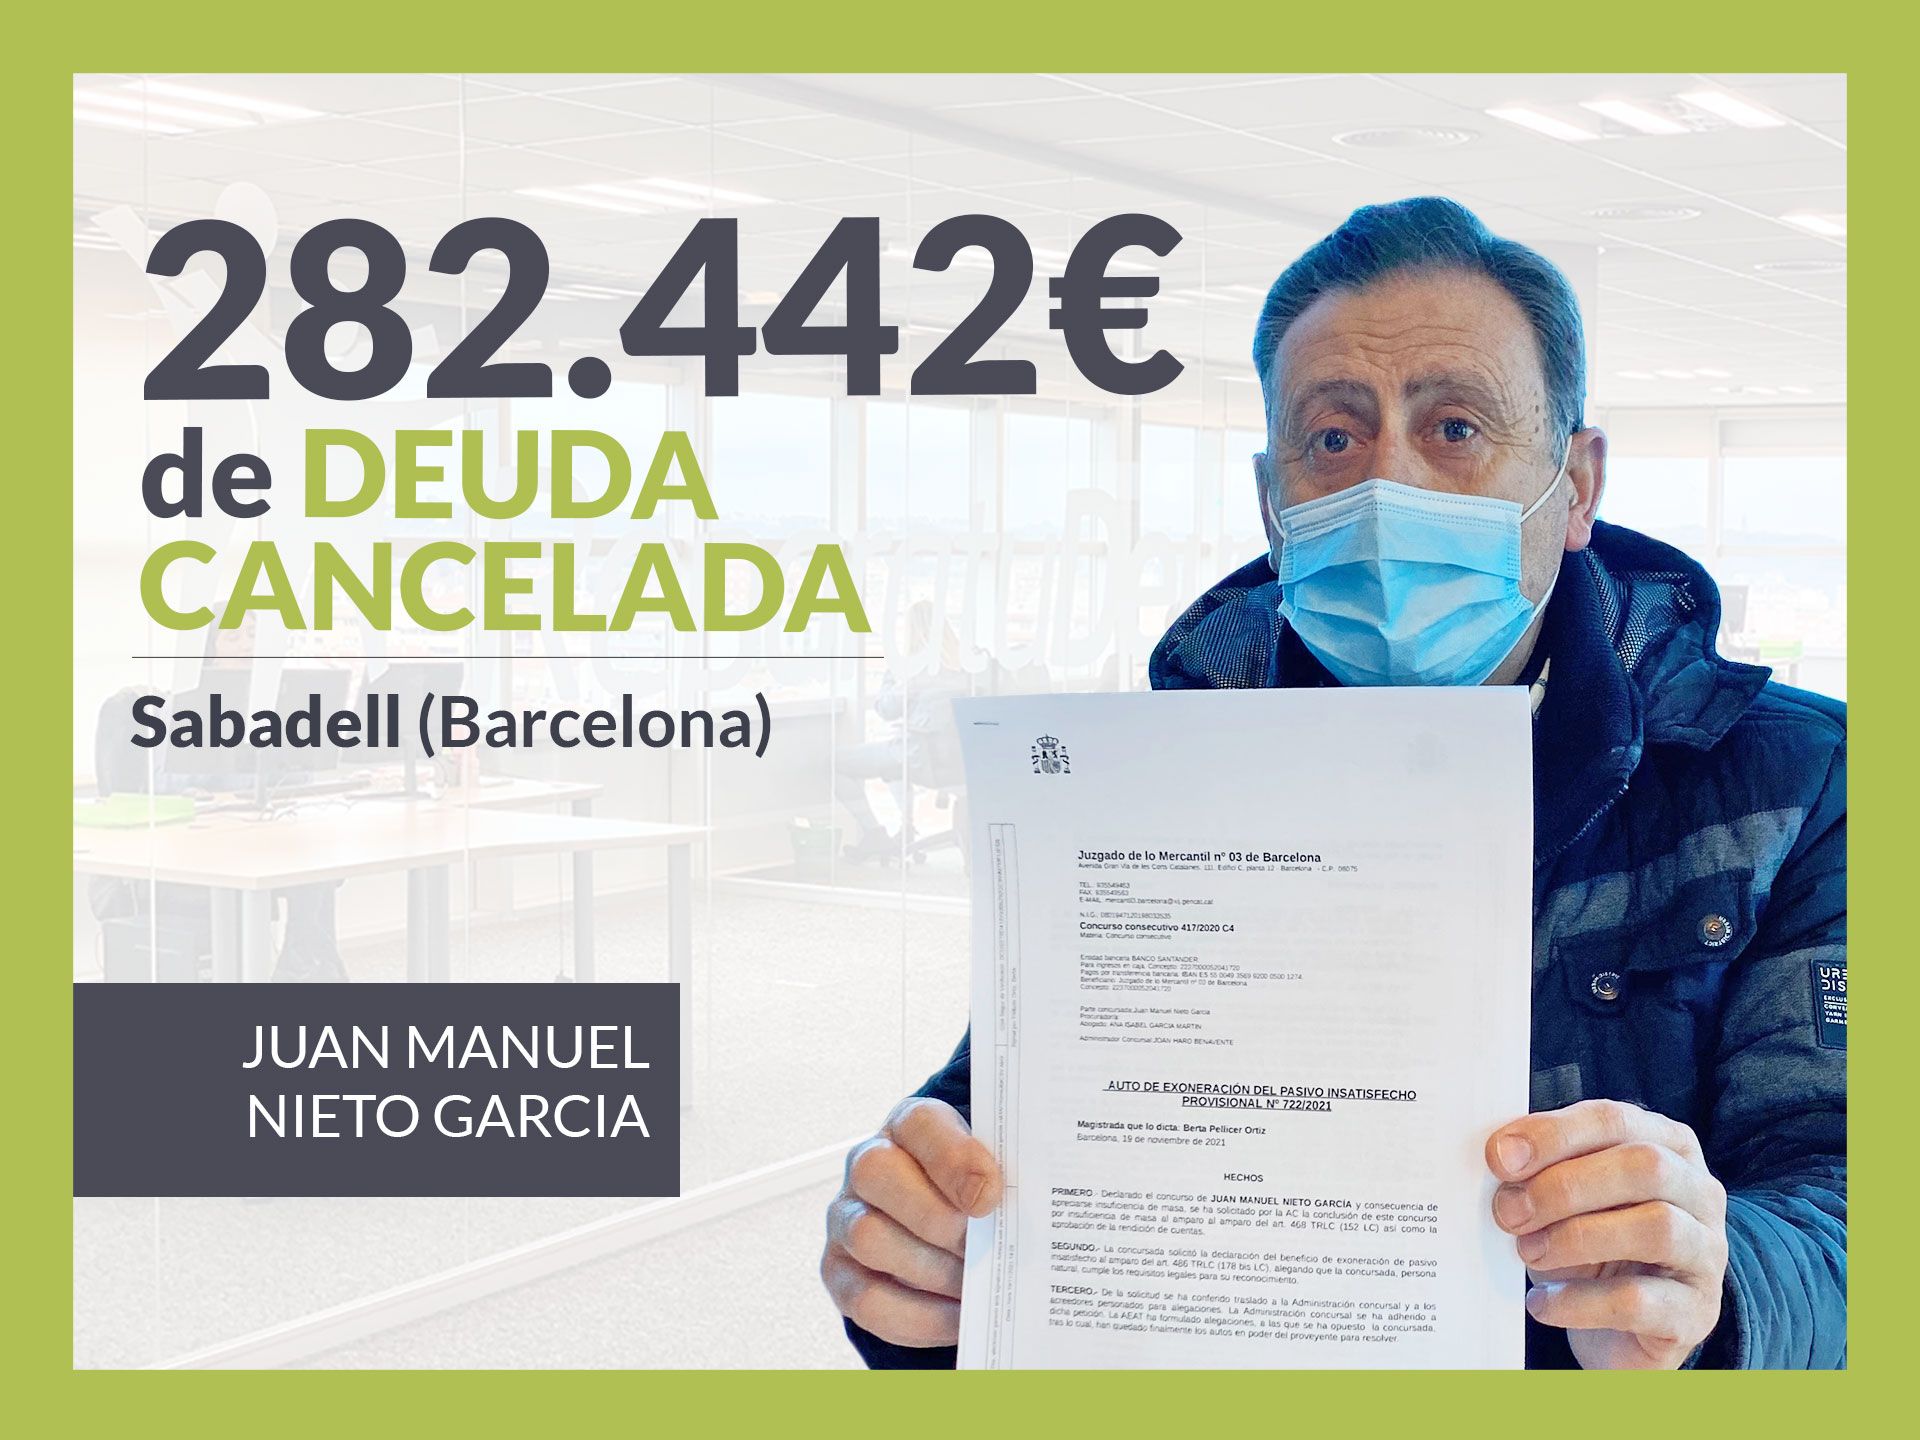 Repara tu Deuda Abogados cancela 282.442? en Sabadell (Barcelona) con la Ley de Segunda Oportunidad